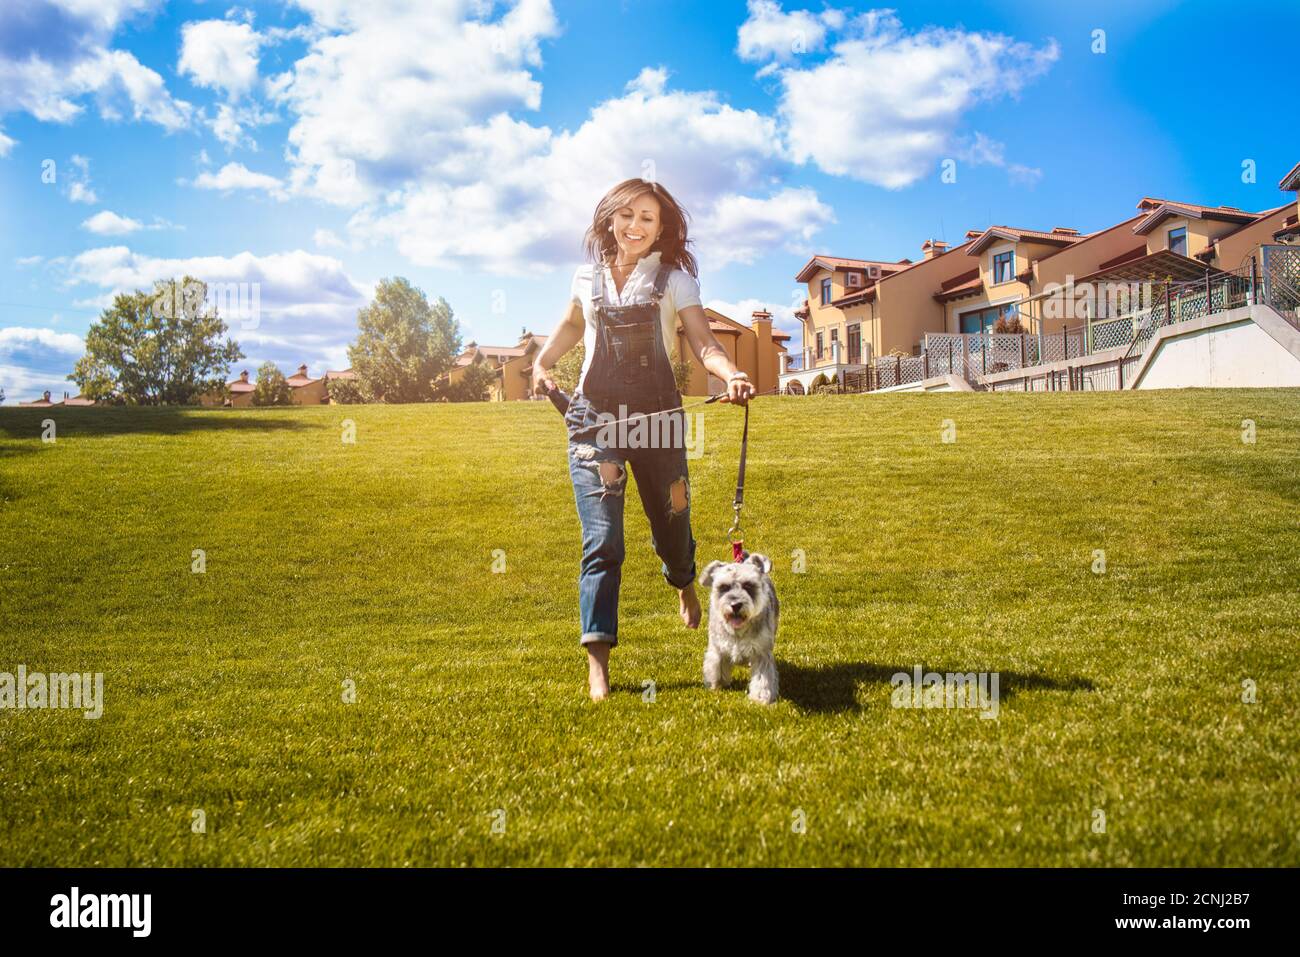 La femme de race blanche adulte se présente dans le parc avec son chien bien-aimé Schnauzer. Humeur amusante. Concept d'amour pour les animaux. Meilleurs amis Banque D'Images